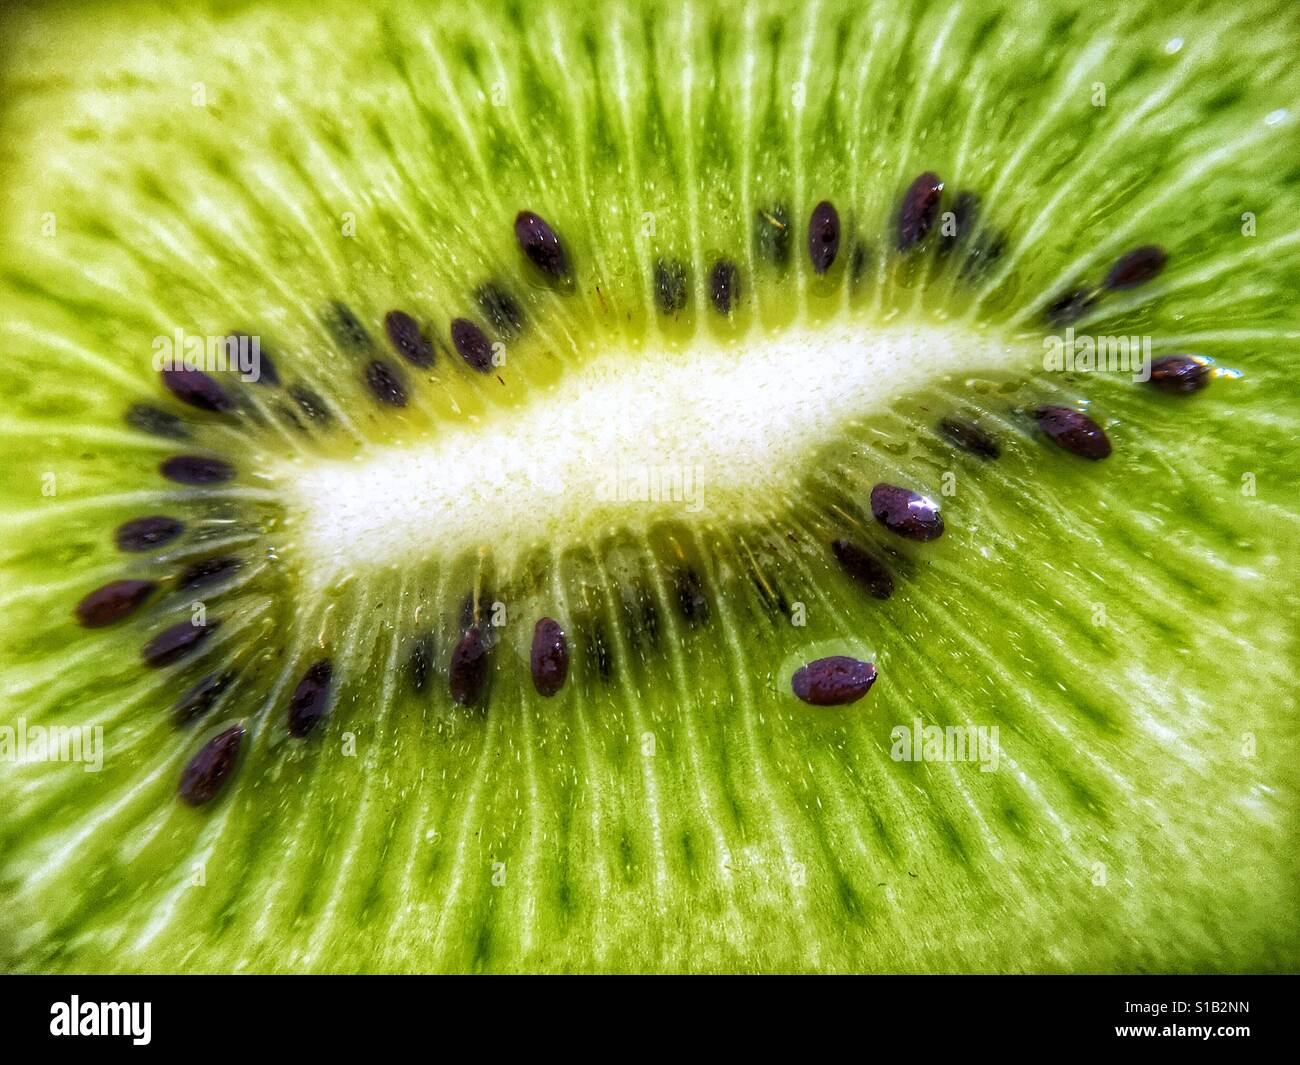 Nahaufnahme Makroaufnahme des grünen Zentrums eine frische Kiwi. Stockfoto